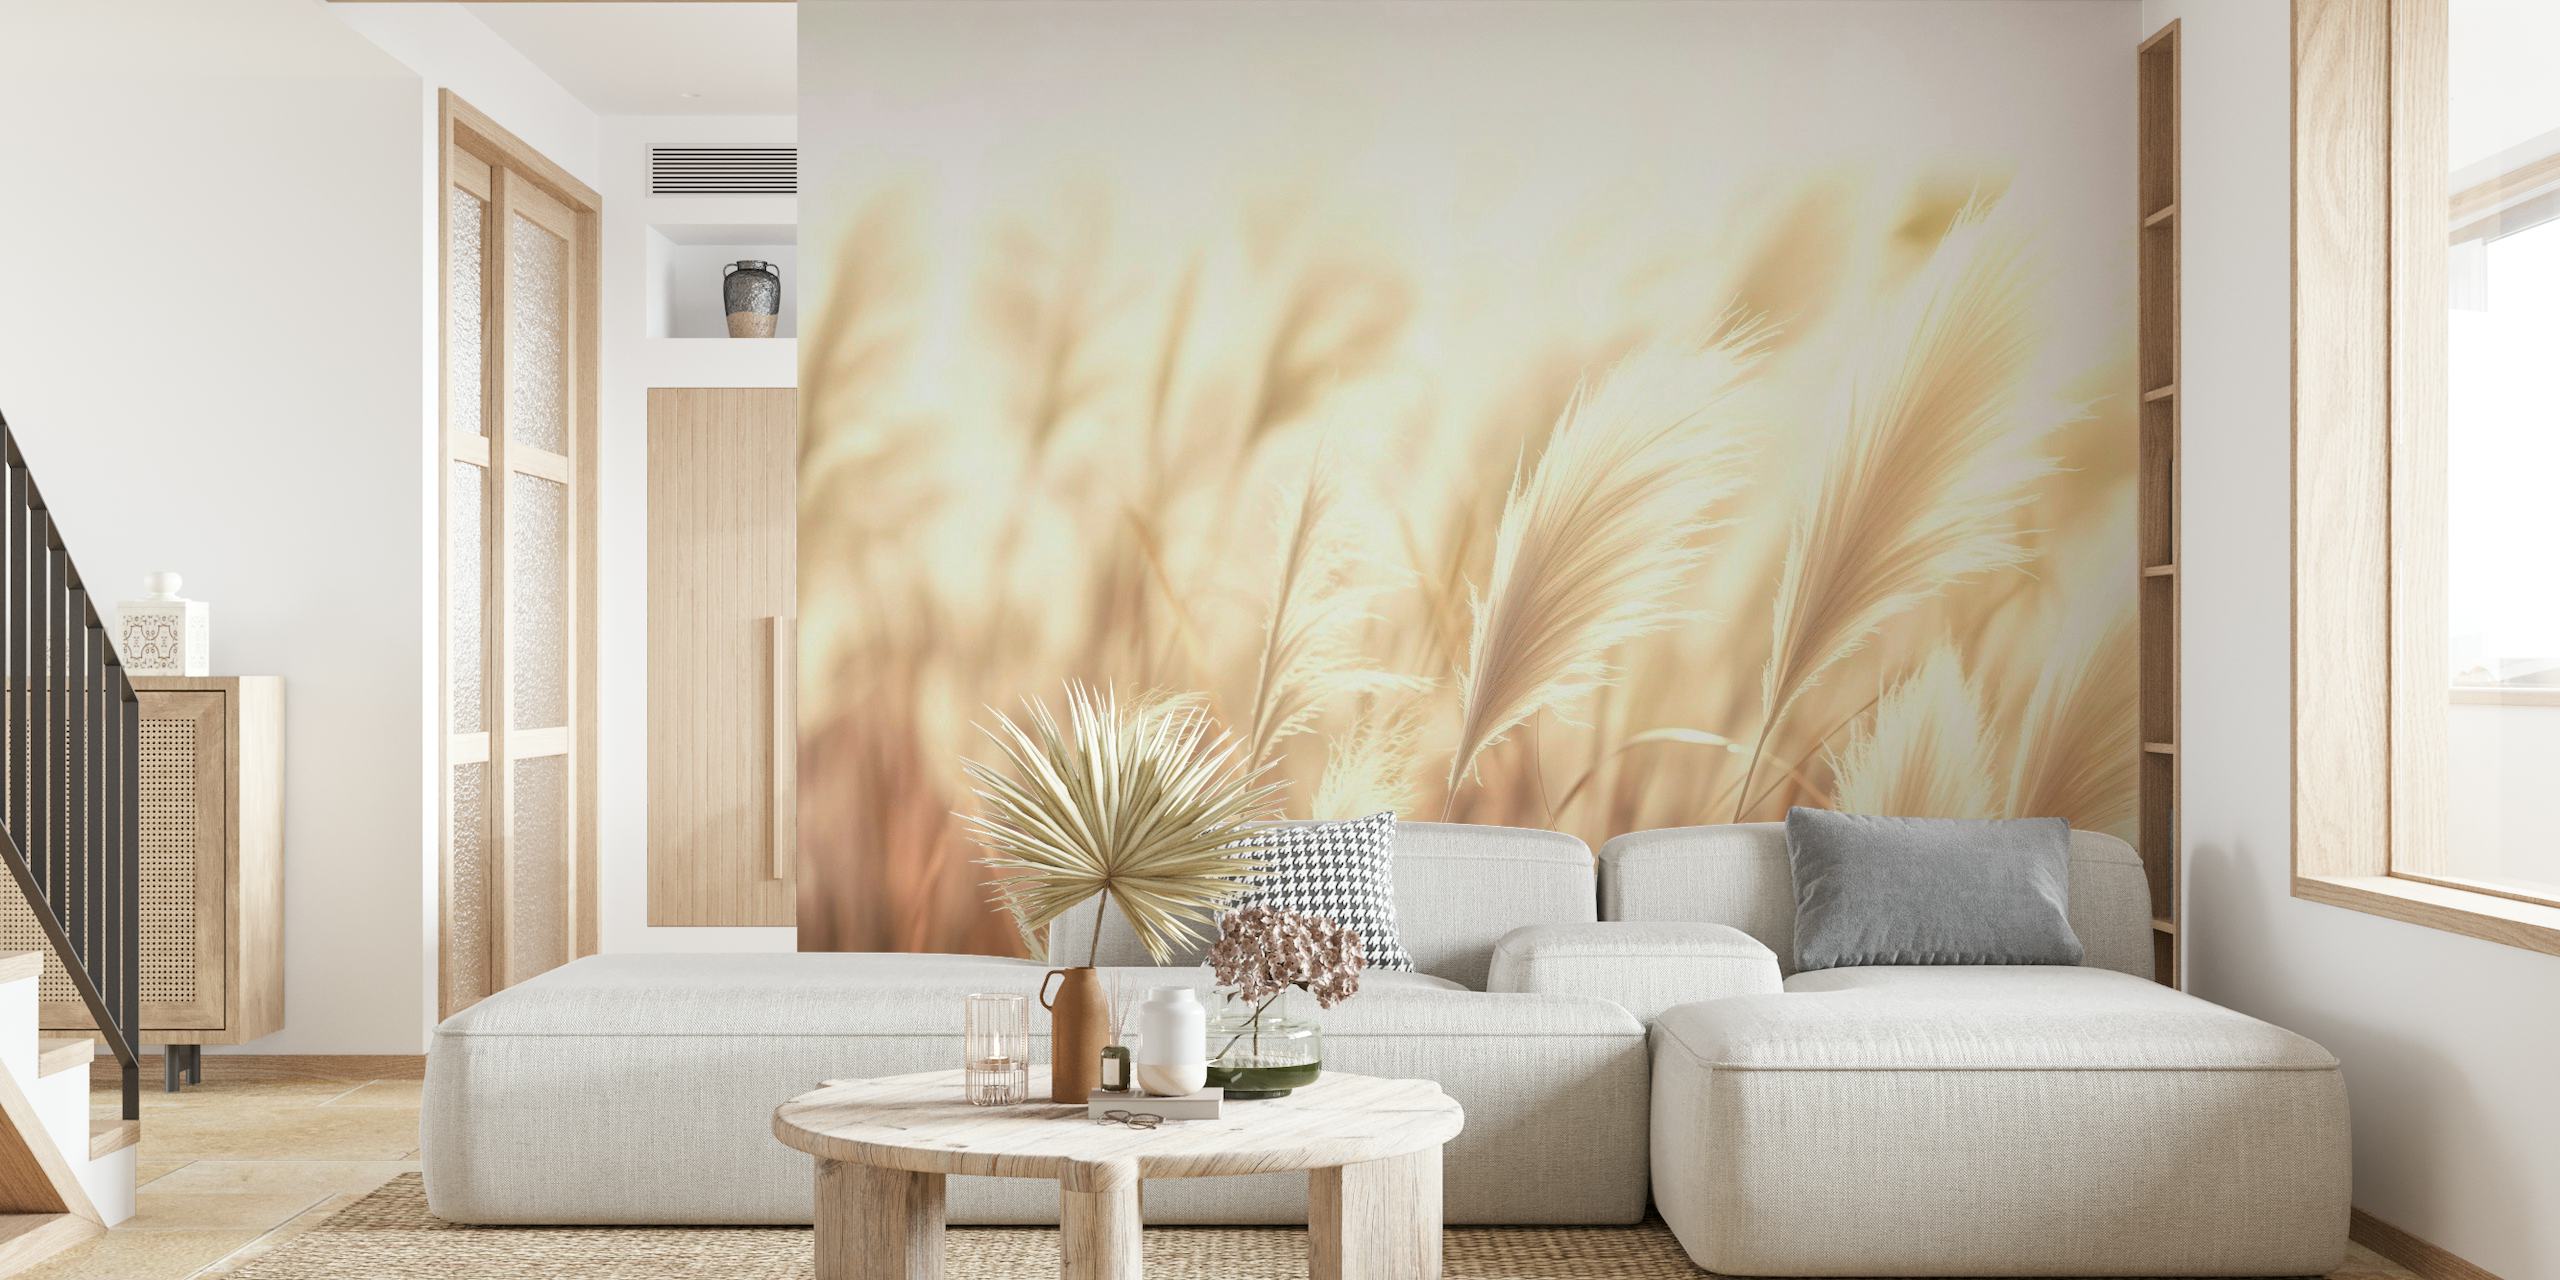 Serenity Swirls zidna slika koja prikazuje nježne vrtloge u toplim tonovima